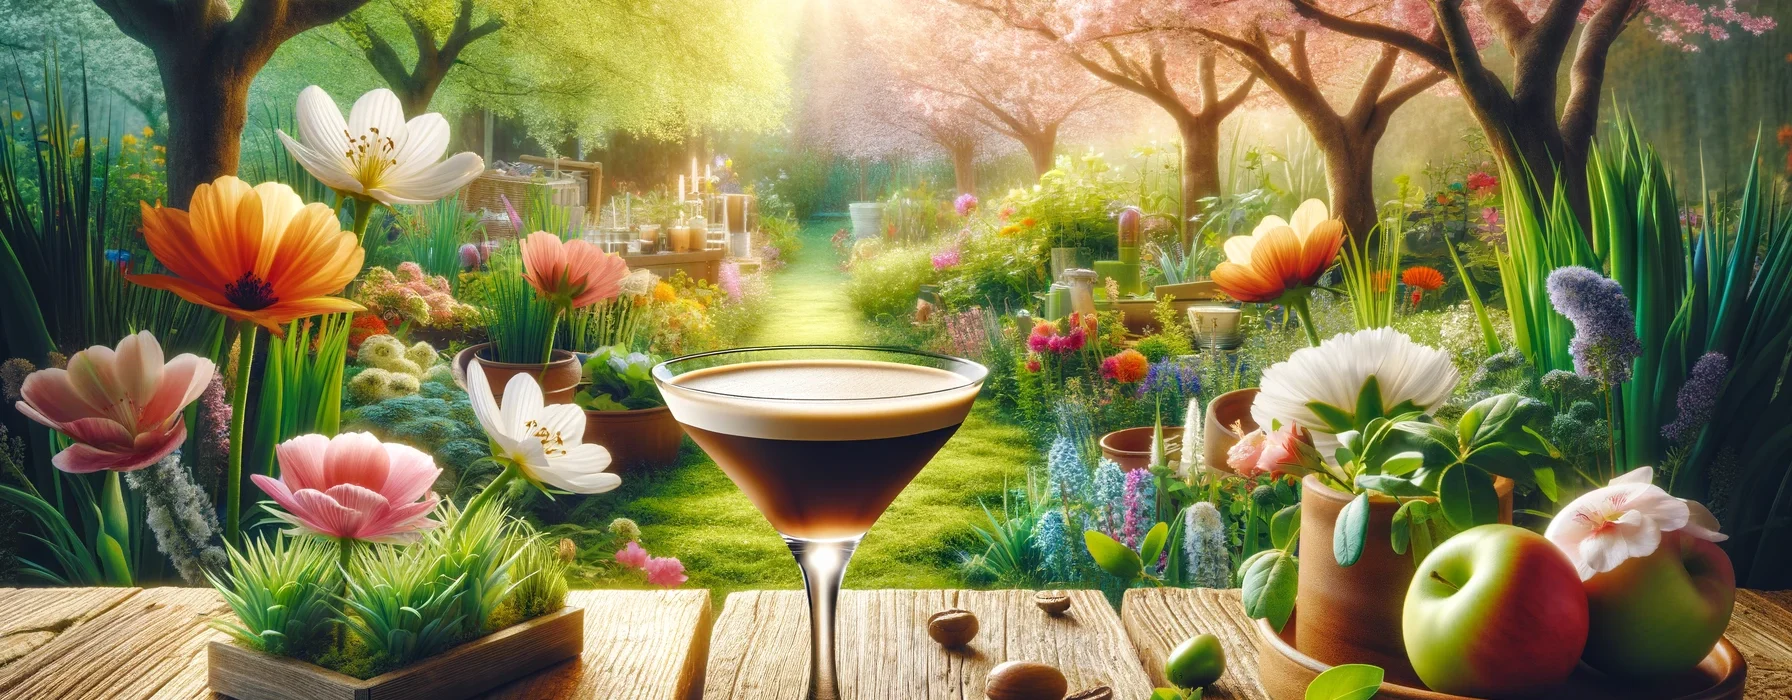 Springtime Espresso Martini